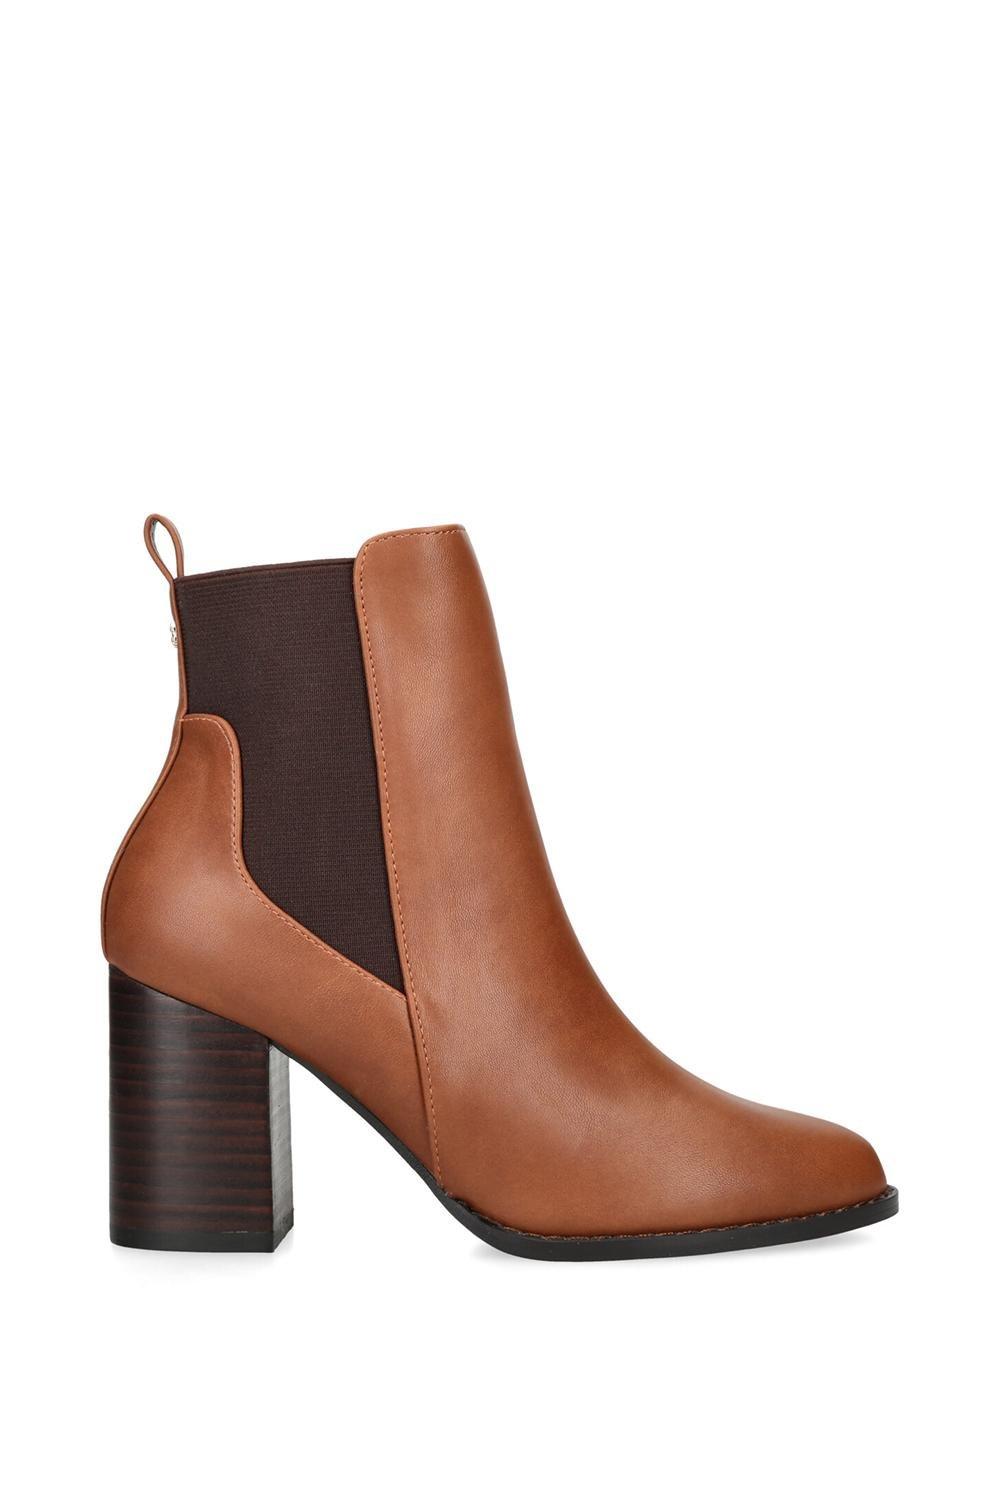 Ботинки Toodle Chelsea Carvela, коричневый ботинки career dress chelsea aravon коричневый